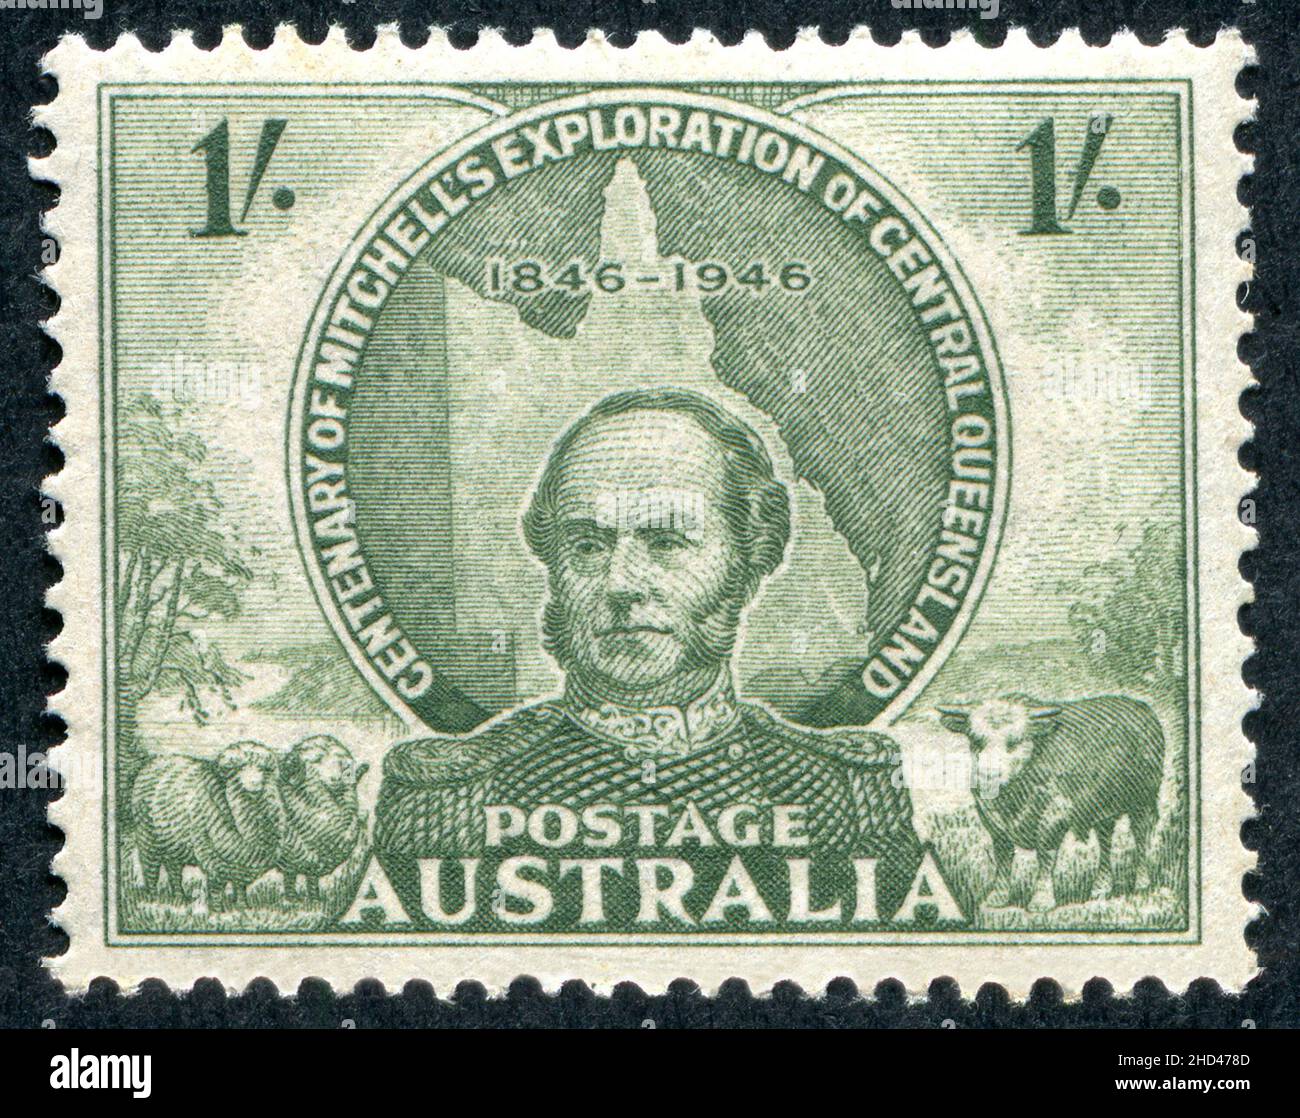 Eine 1946 Ausgabe 1/- Australische Briefmarke zum Gedenken an den 100. Jahrestag der Erkundung von Sir Thomas Mitchell in Central Queensland, Australien. Der Stempel wurde von Frank D. Manley entworfen und graviert. Stockfoto